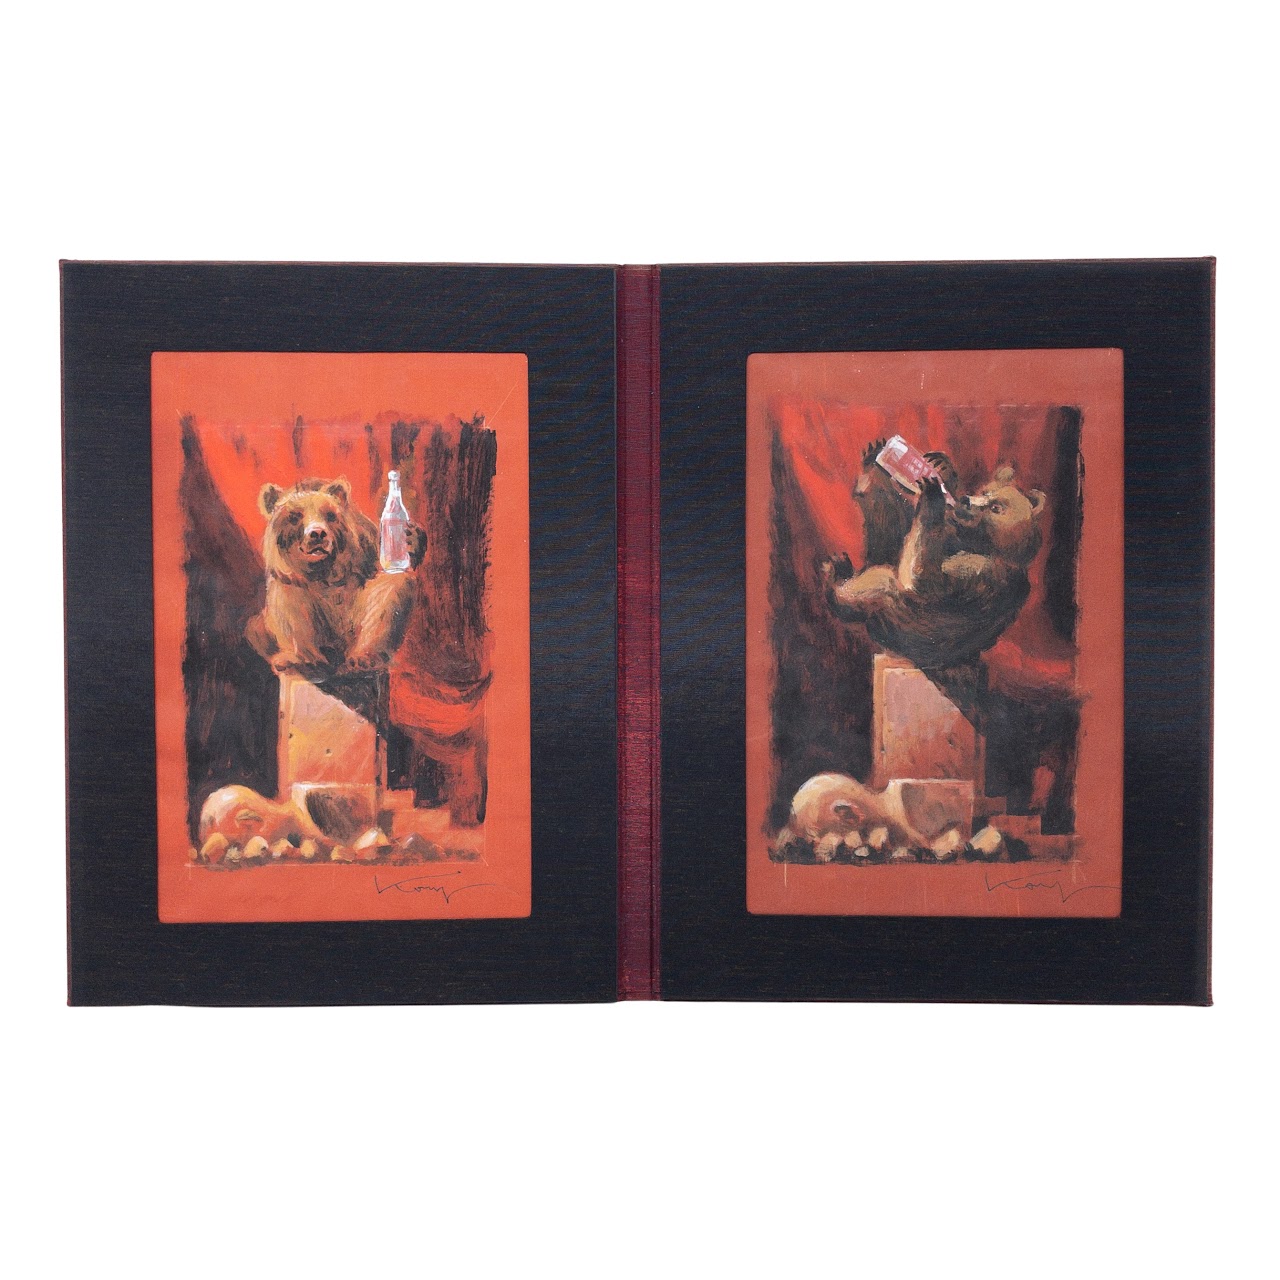 Vitaly Komar: The Bear Artwork Pair In Folder